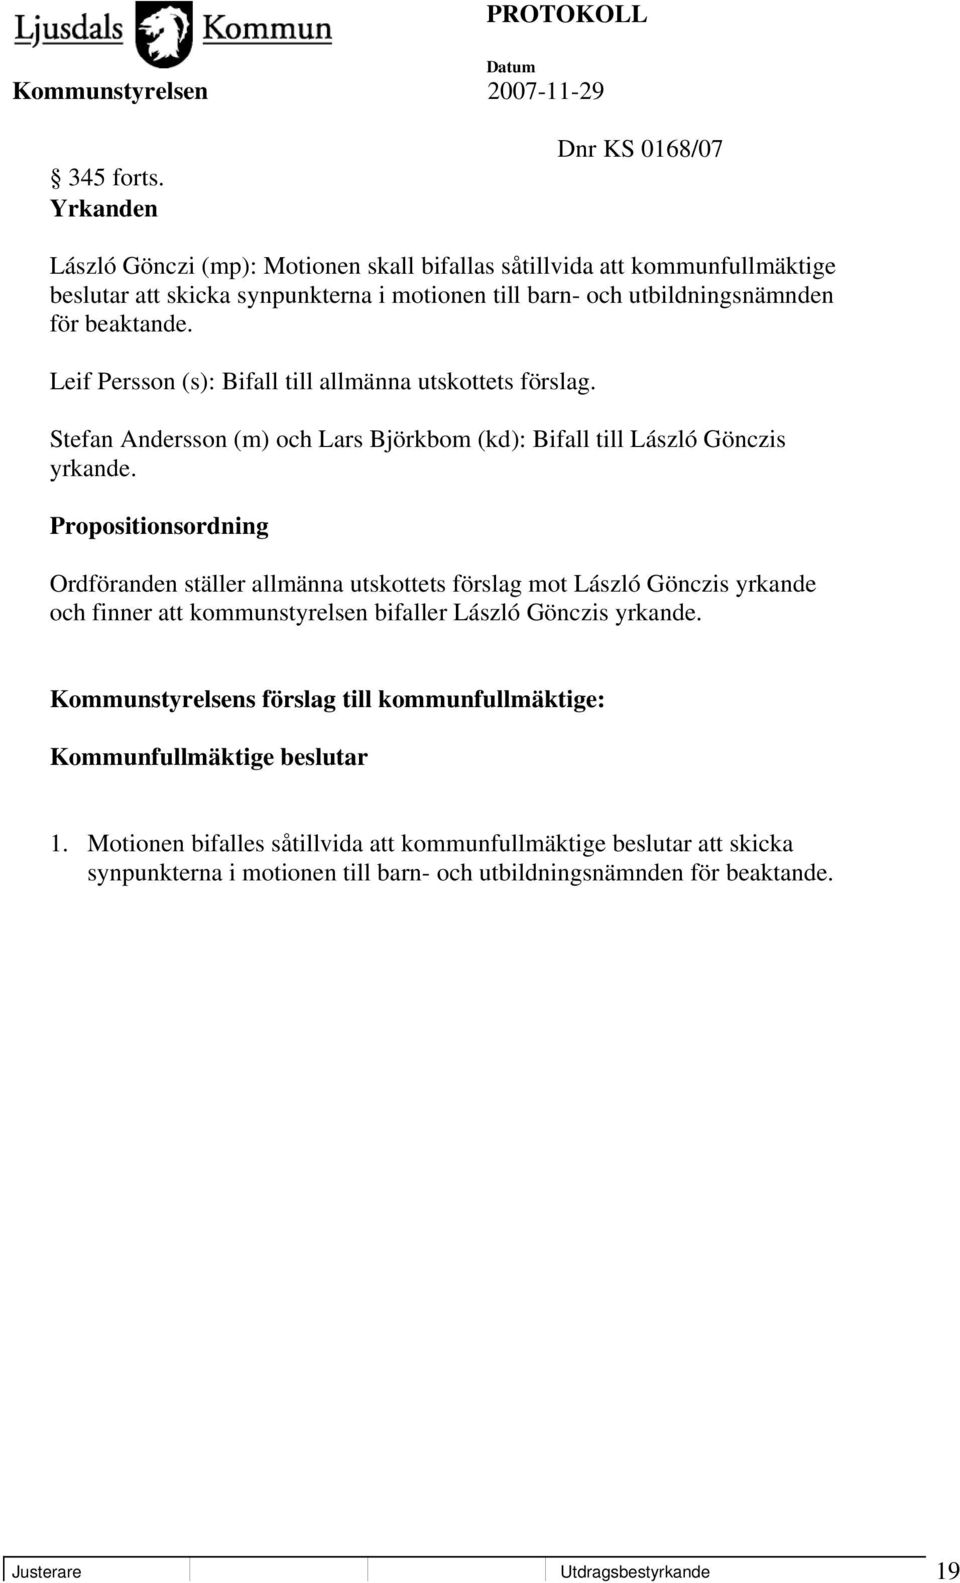 beaktande. Leif Persson (s): Bifall till allmänna utskottets förslag. Stefan Andersson (m) och Lars Björkbom (kd): Bifall till László Gönczis yrkande.